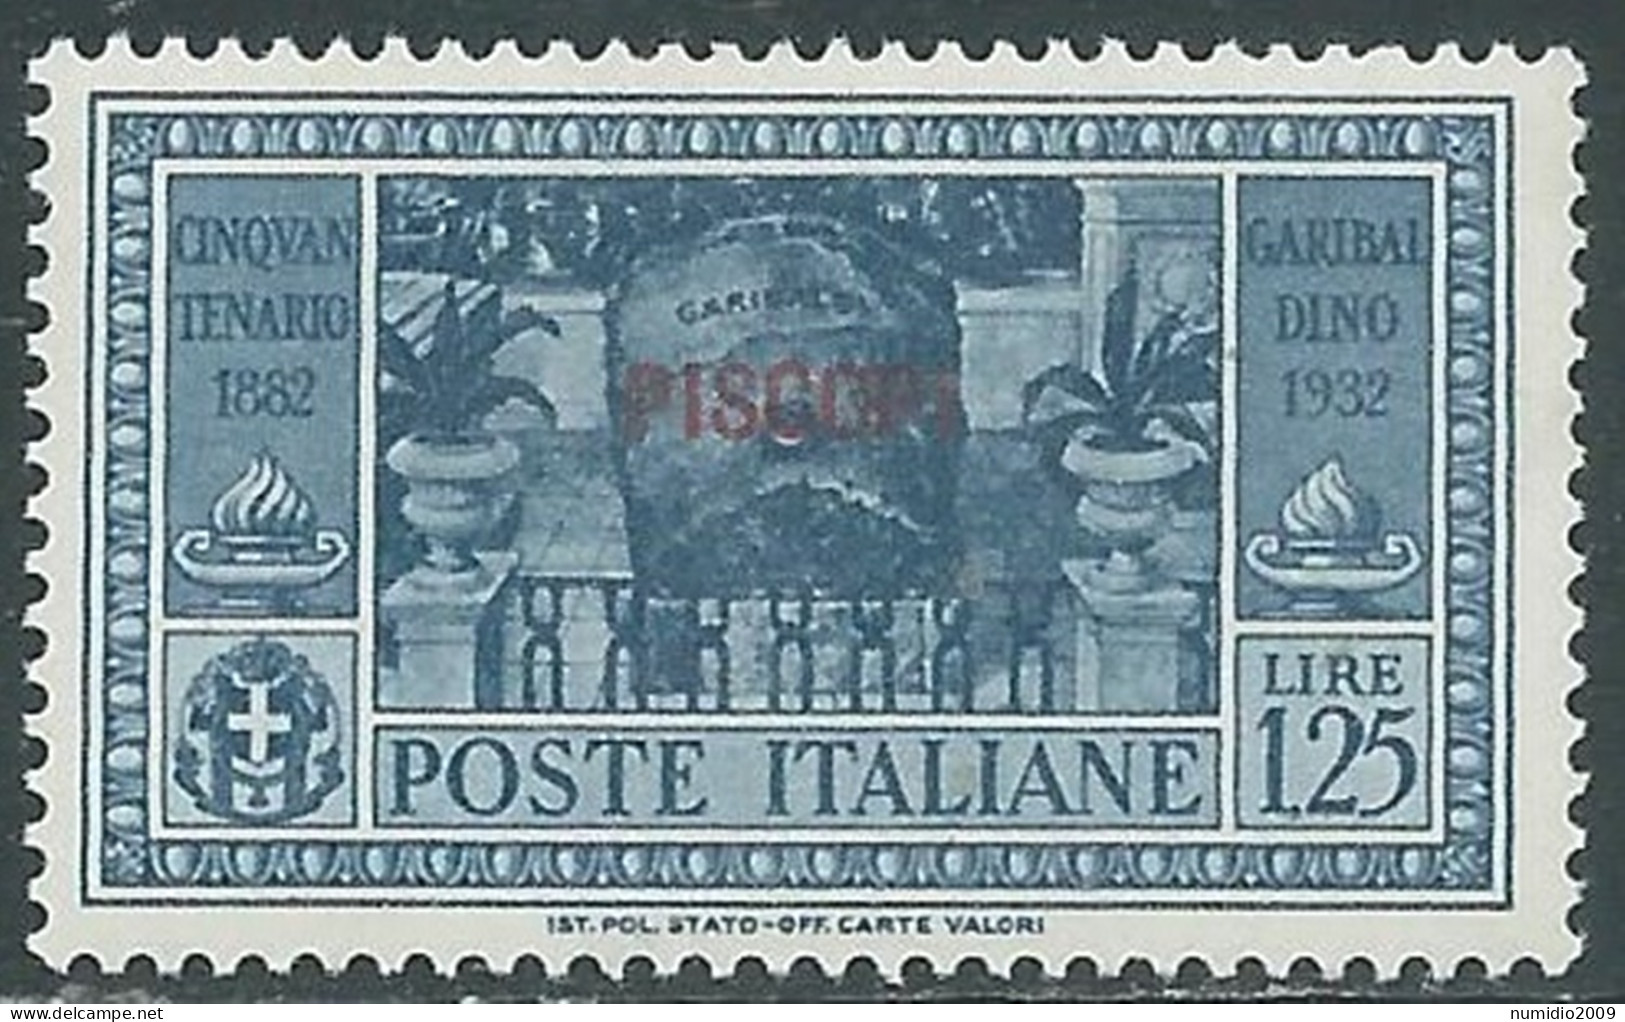 1932 EGEO PISCOPI GARIBALDI 1,25 LIRE MNH ** - I45-9 - Aegean (Piscopi)